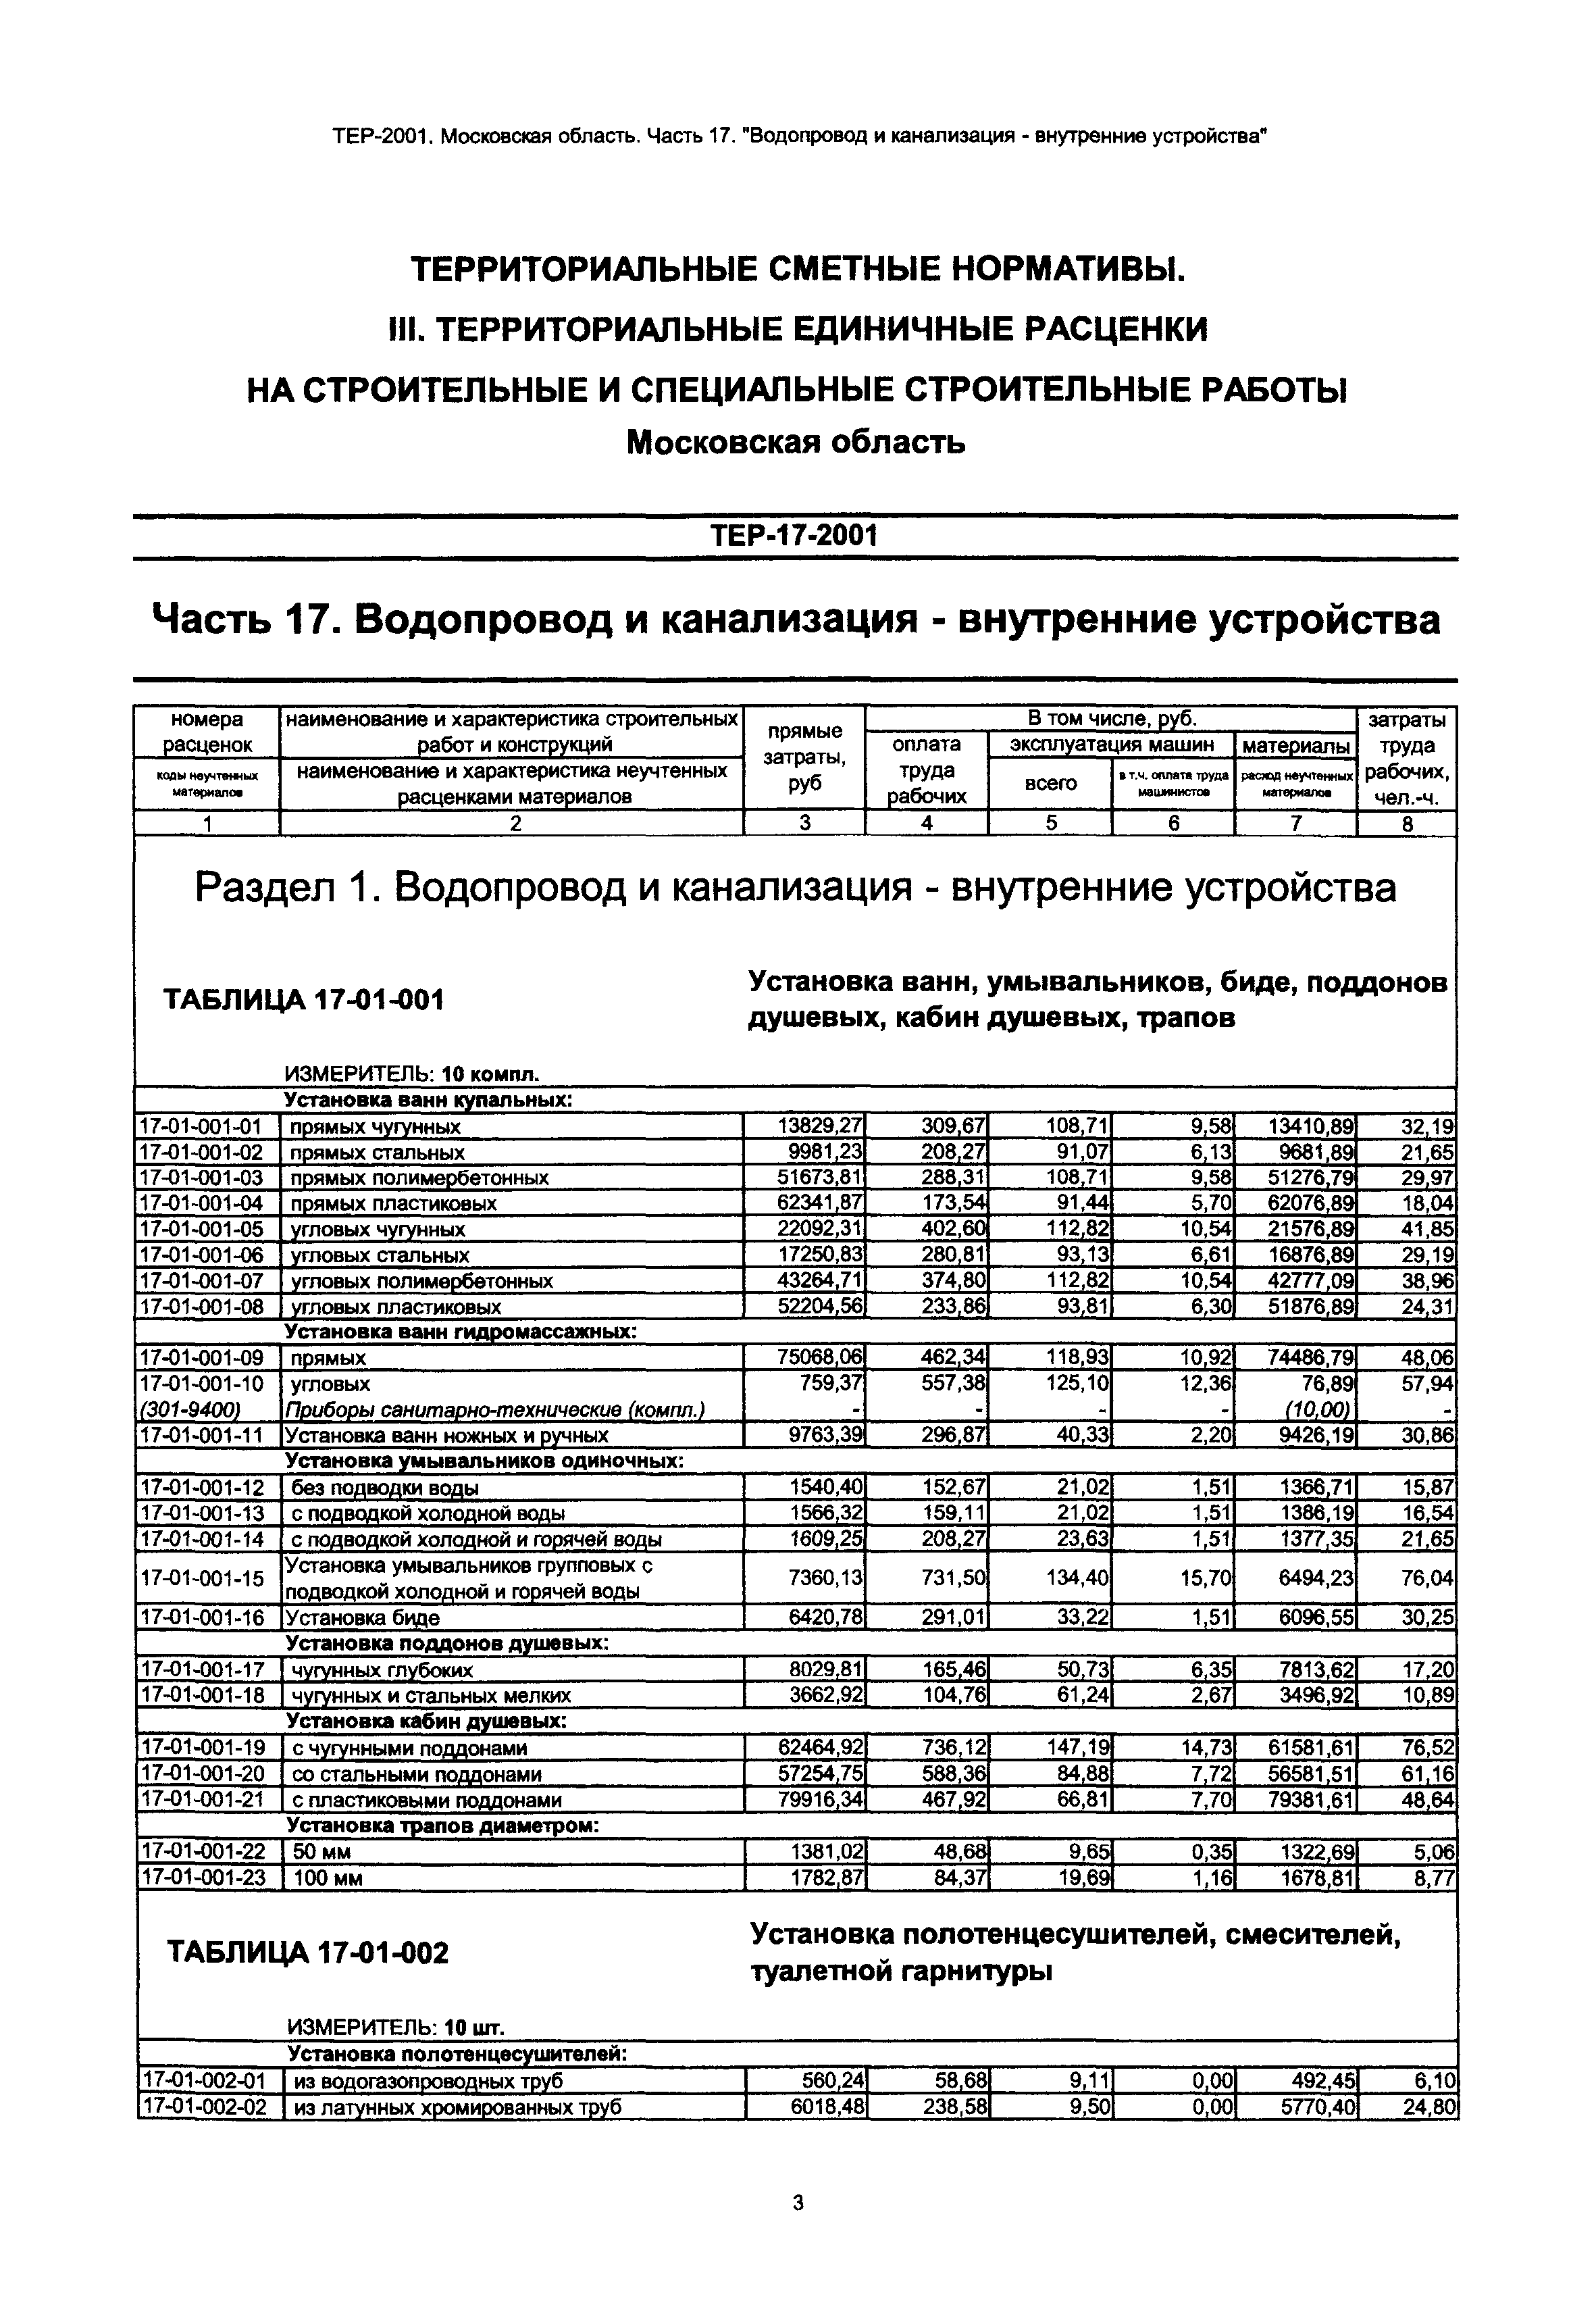 ТЕР 17-2001 Московской области